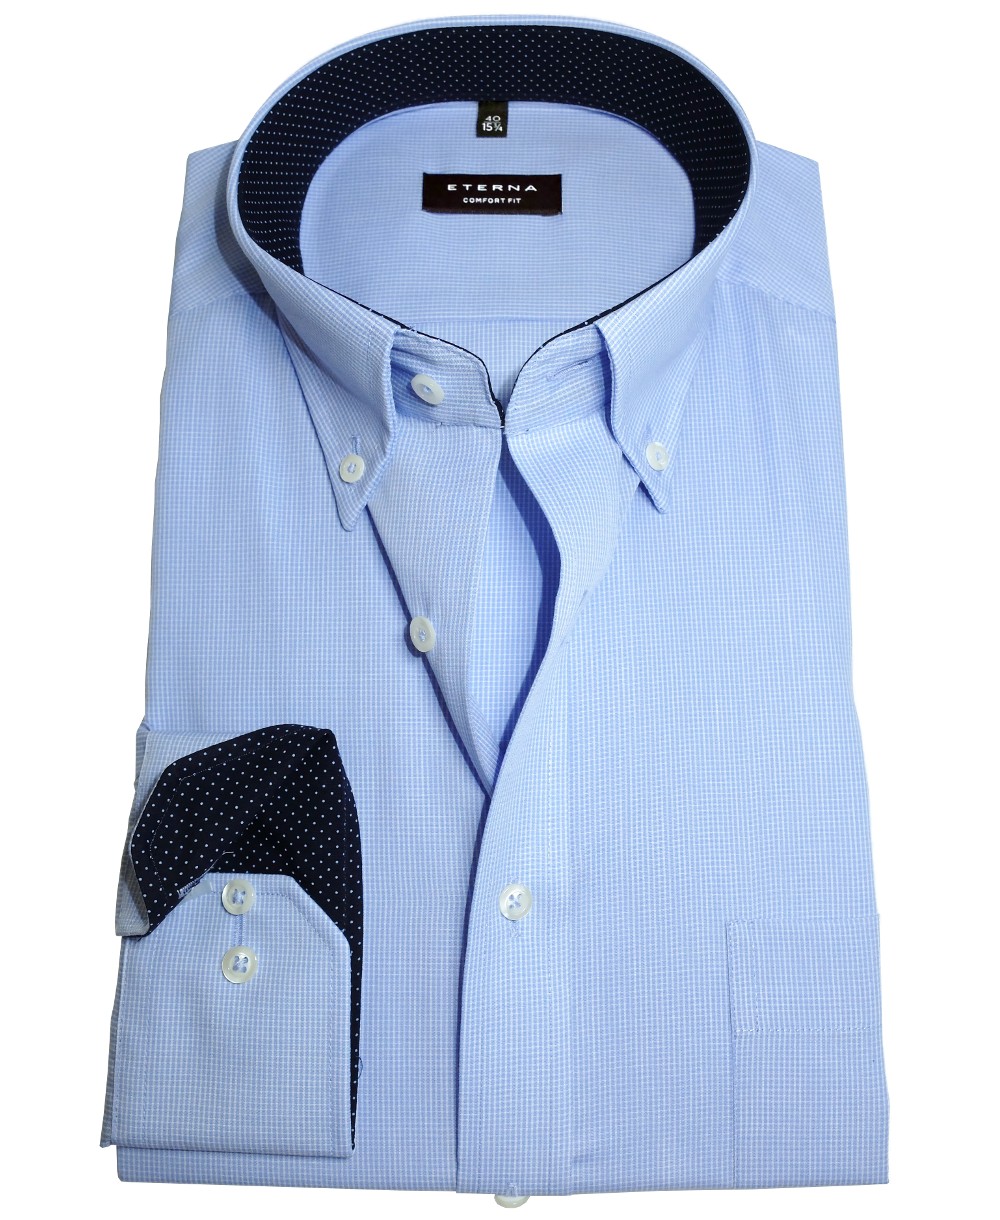 Langarmhemd in hellblau eterna Gitterkaro fairen Patches - Herrenmode Hochwertige Fit Marken Comfort zu Business führender